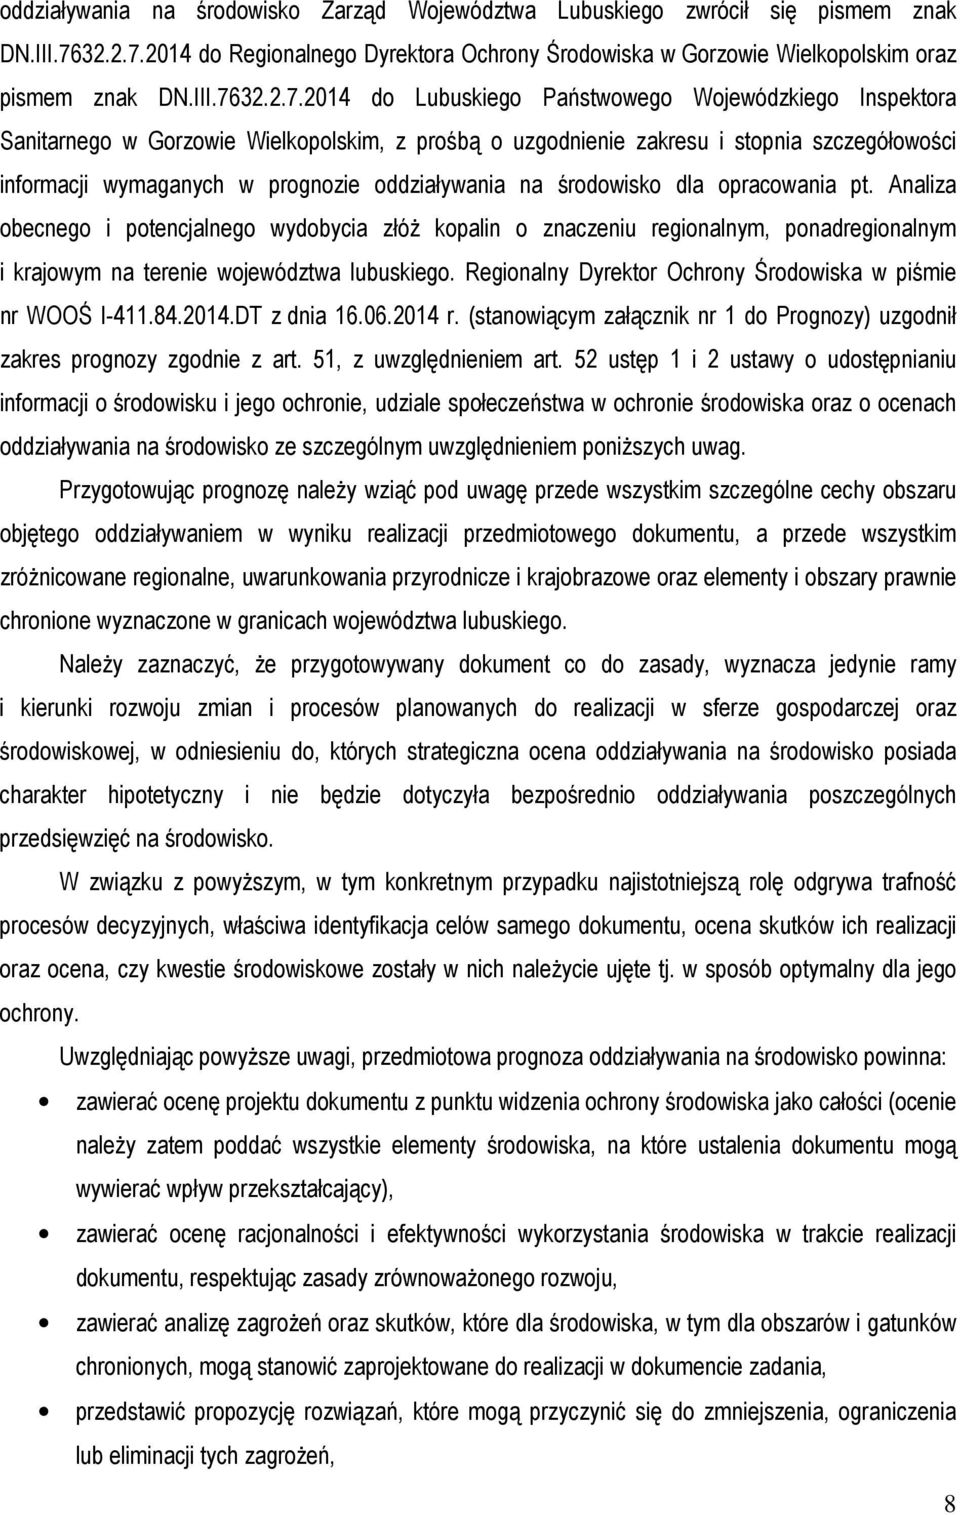 2014 do Regionalnego Dyrektora Ochrony Środowiska w Gorzowie Wielkopolskim oraz pismem znak DN.III.